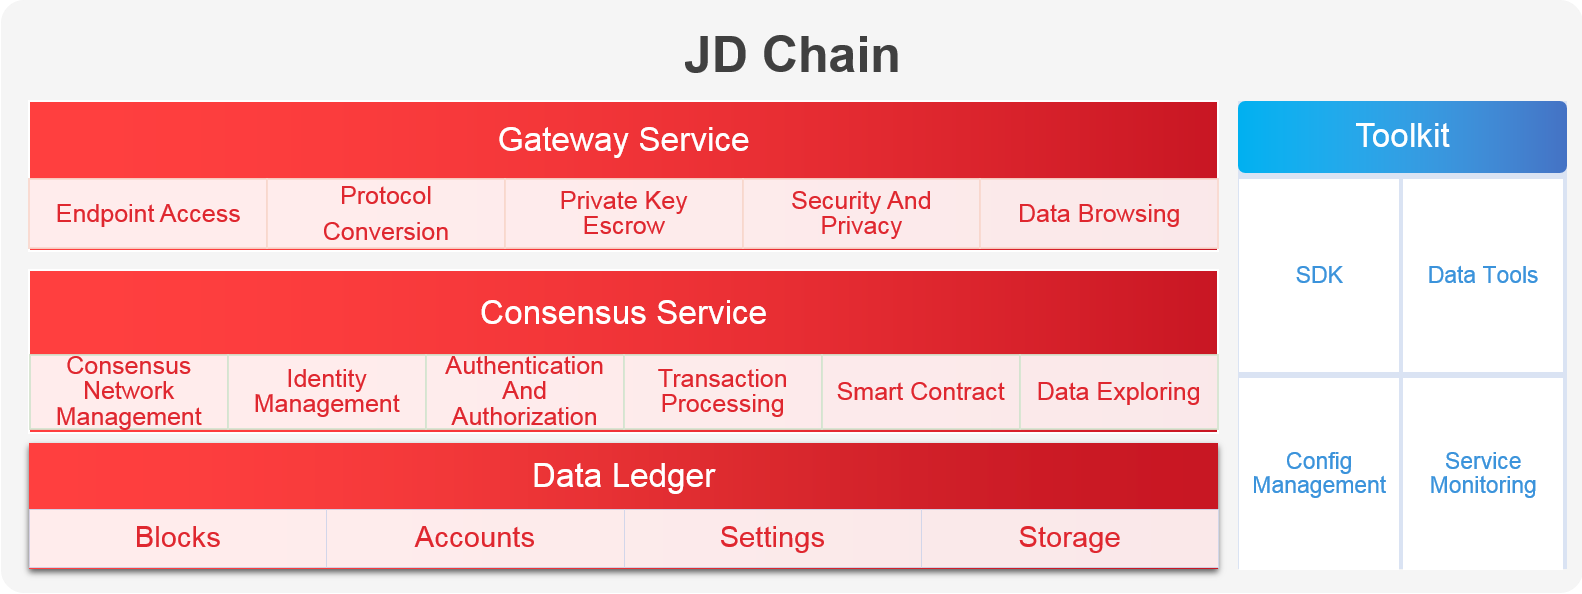 JD Chain, JD’s self-developed blockchain framework open for businesses